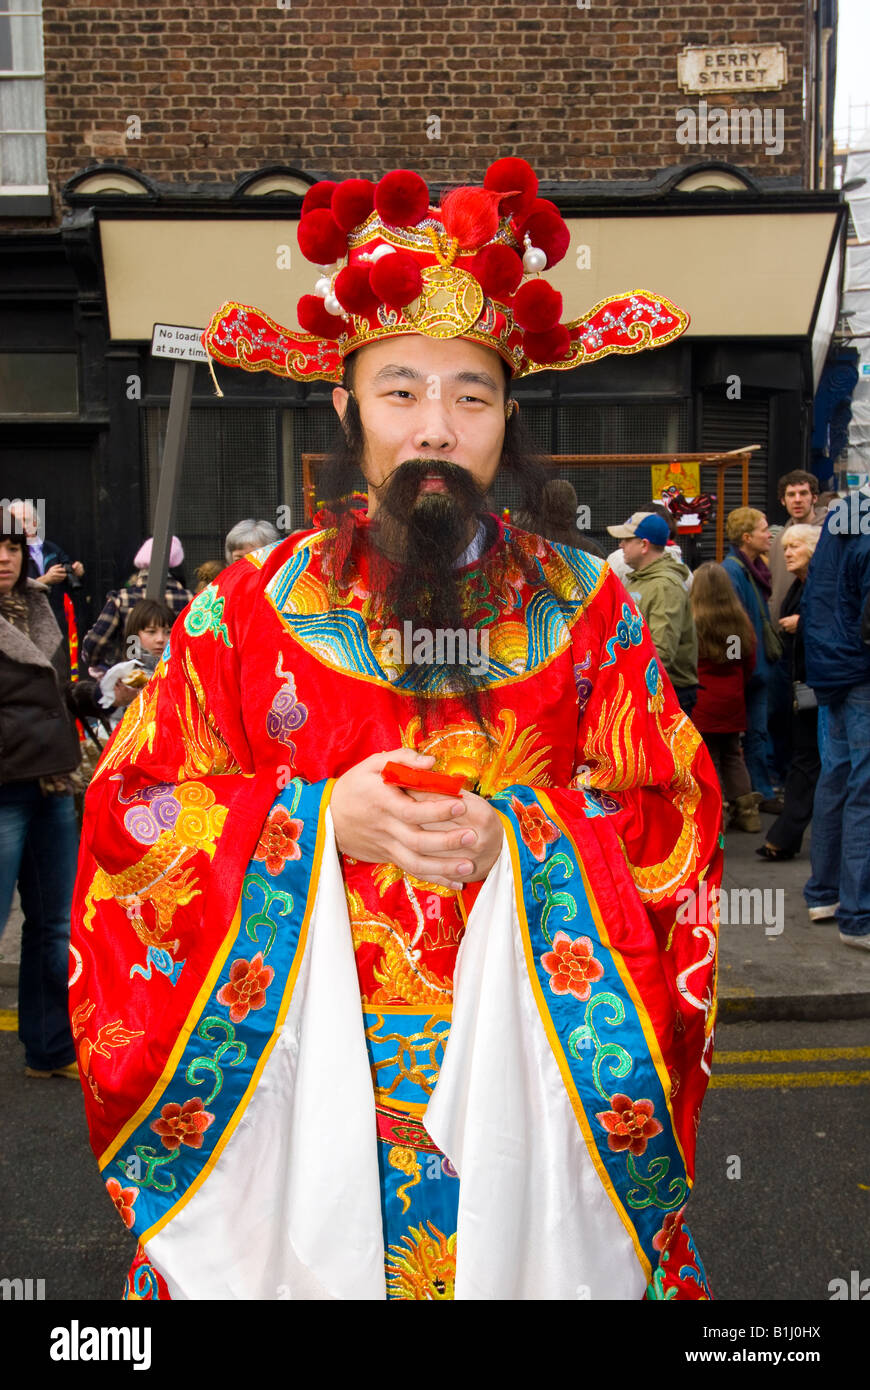 Carattere / persona vestita per il Capodanno cinese Foto Stock